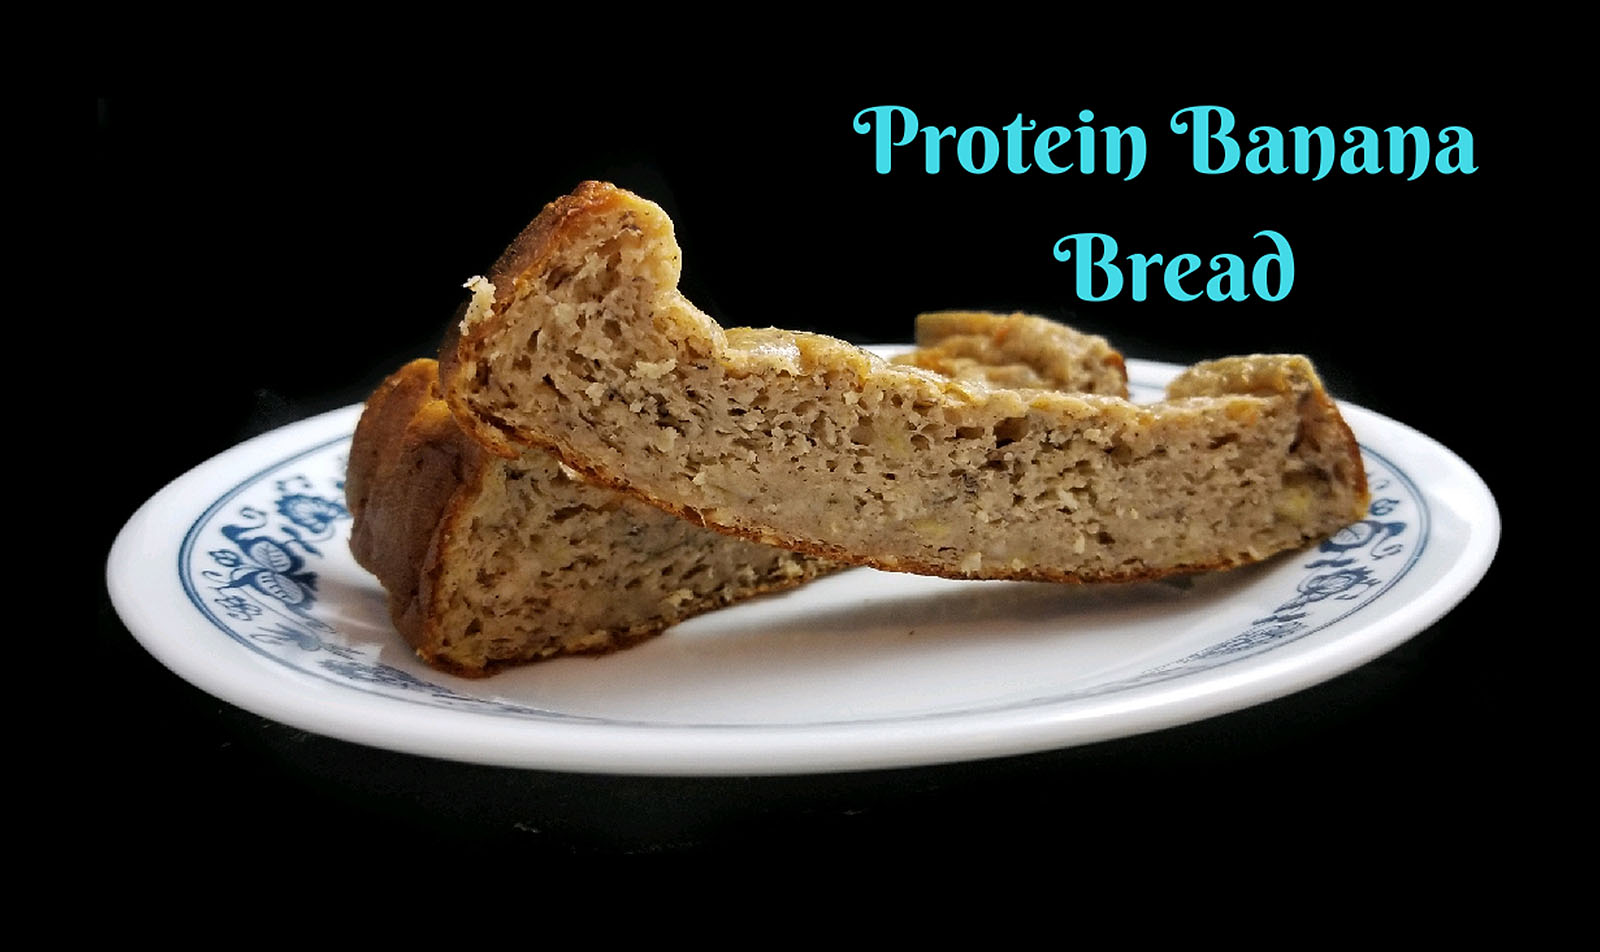 Protein banana bread